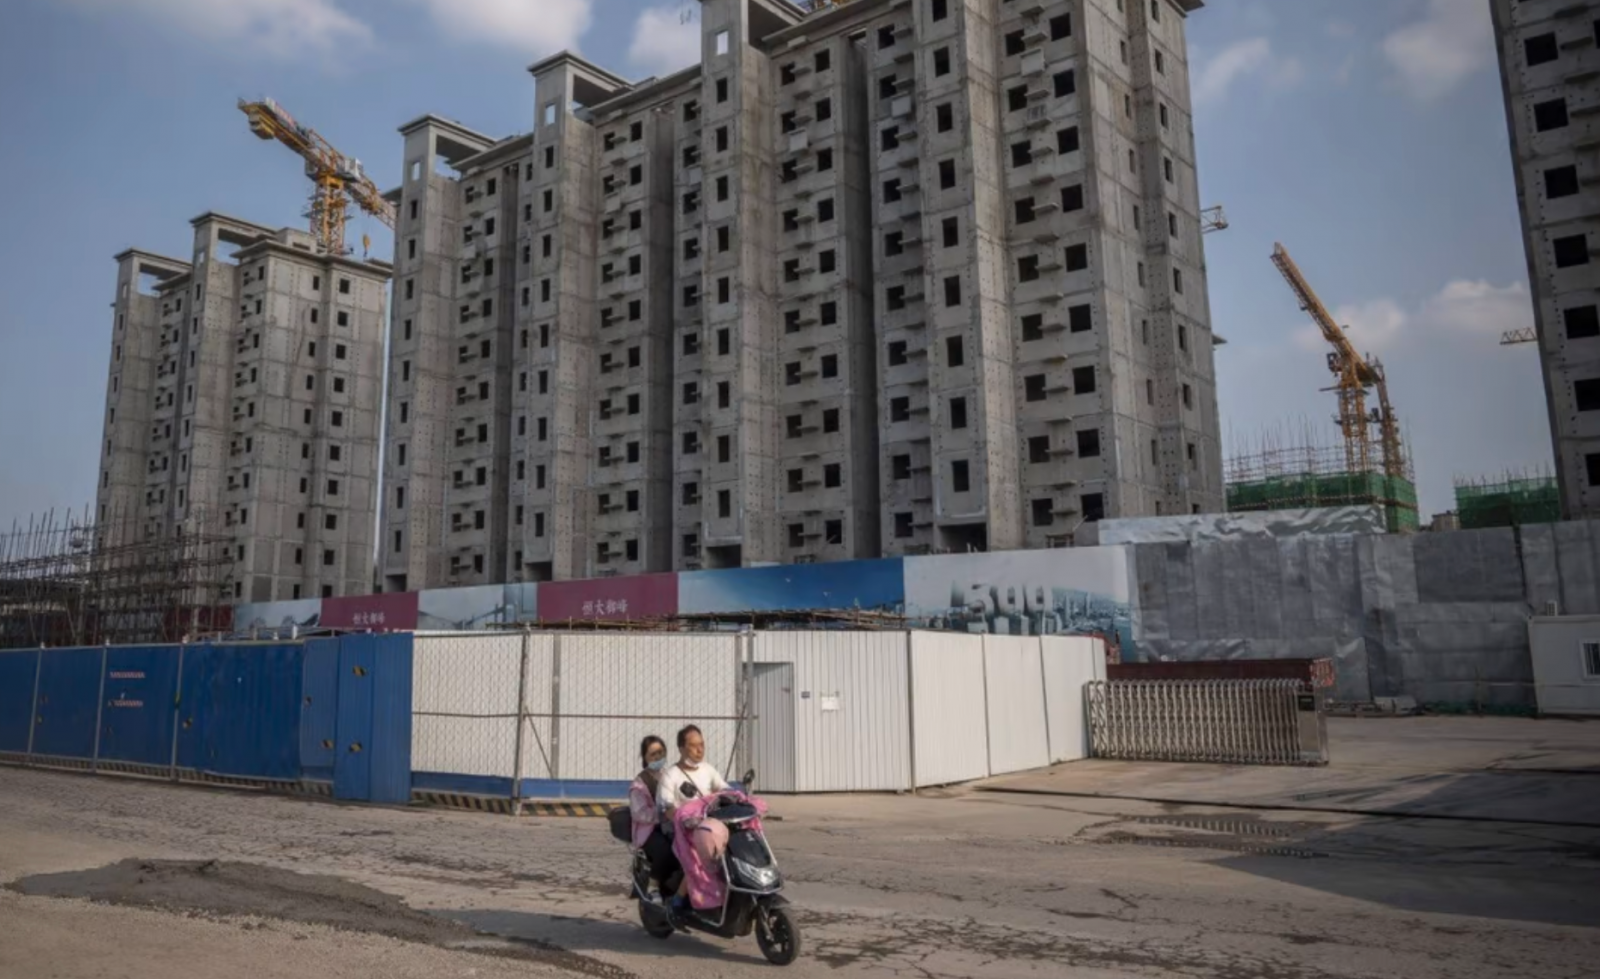 ở Ukraine, lạm phát trỗi dậy và sự suy thoái trong lĩnh vực xây dựng của Trung Quốc đều góp phần vào giá hàng hóa nửa đầu năm 2022 đầy biến động. (Ảnh: Bloomberg)